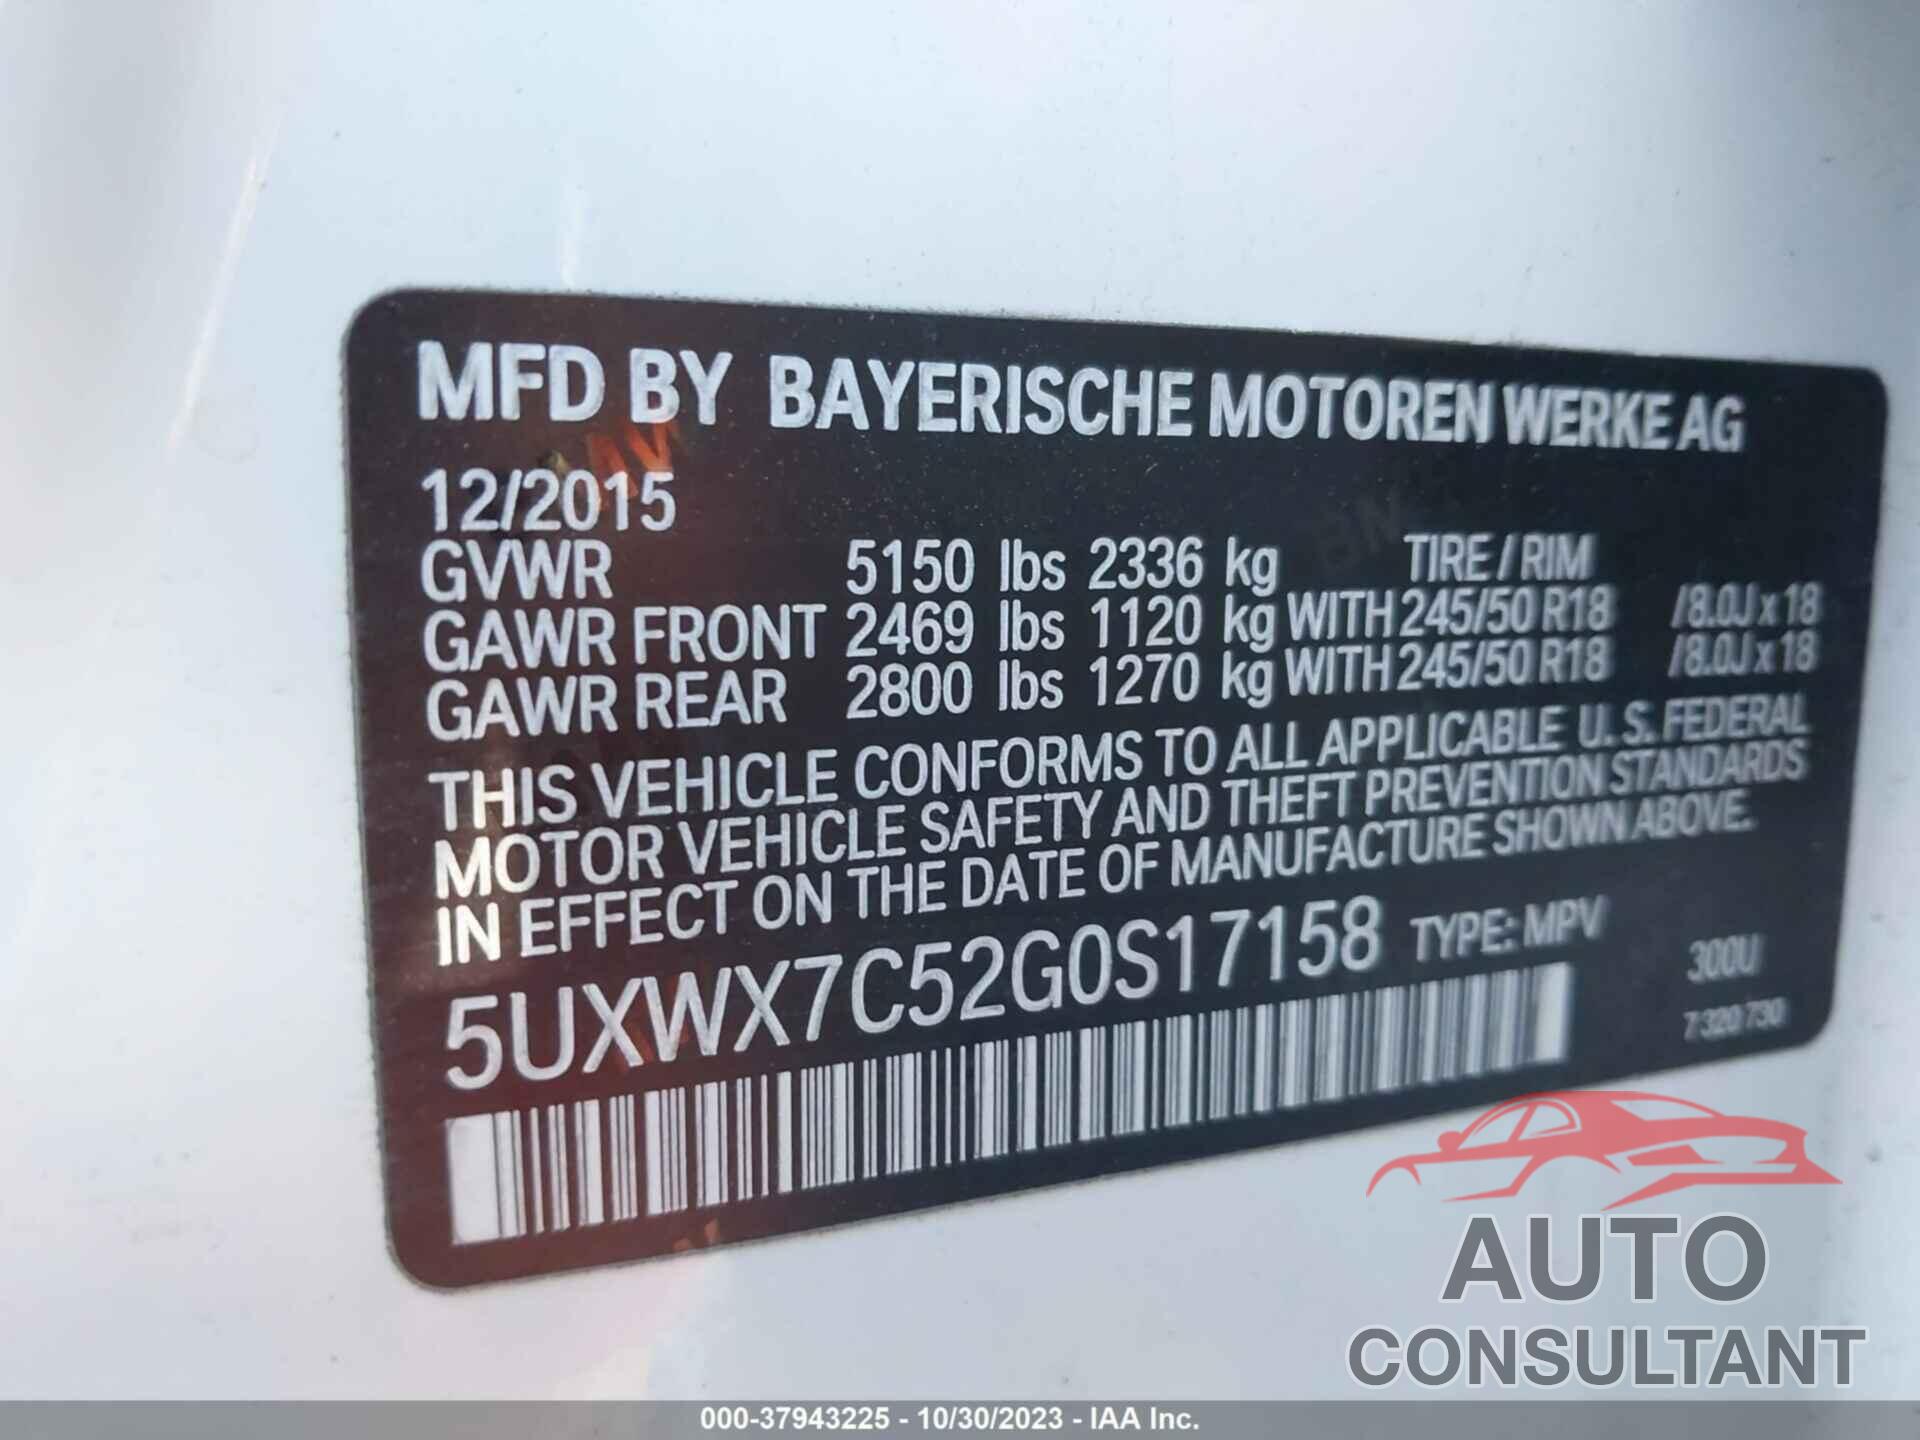 BMW X3 2016 - 5UXWX7C52G0S17158